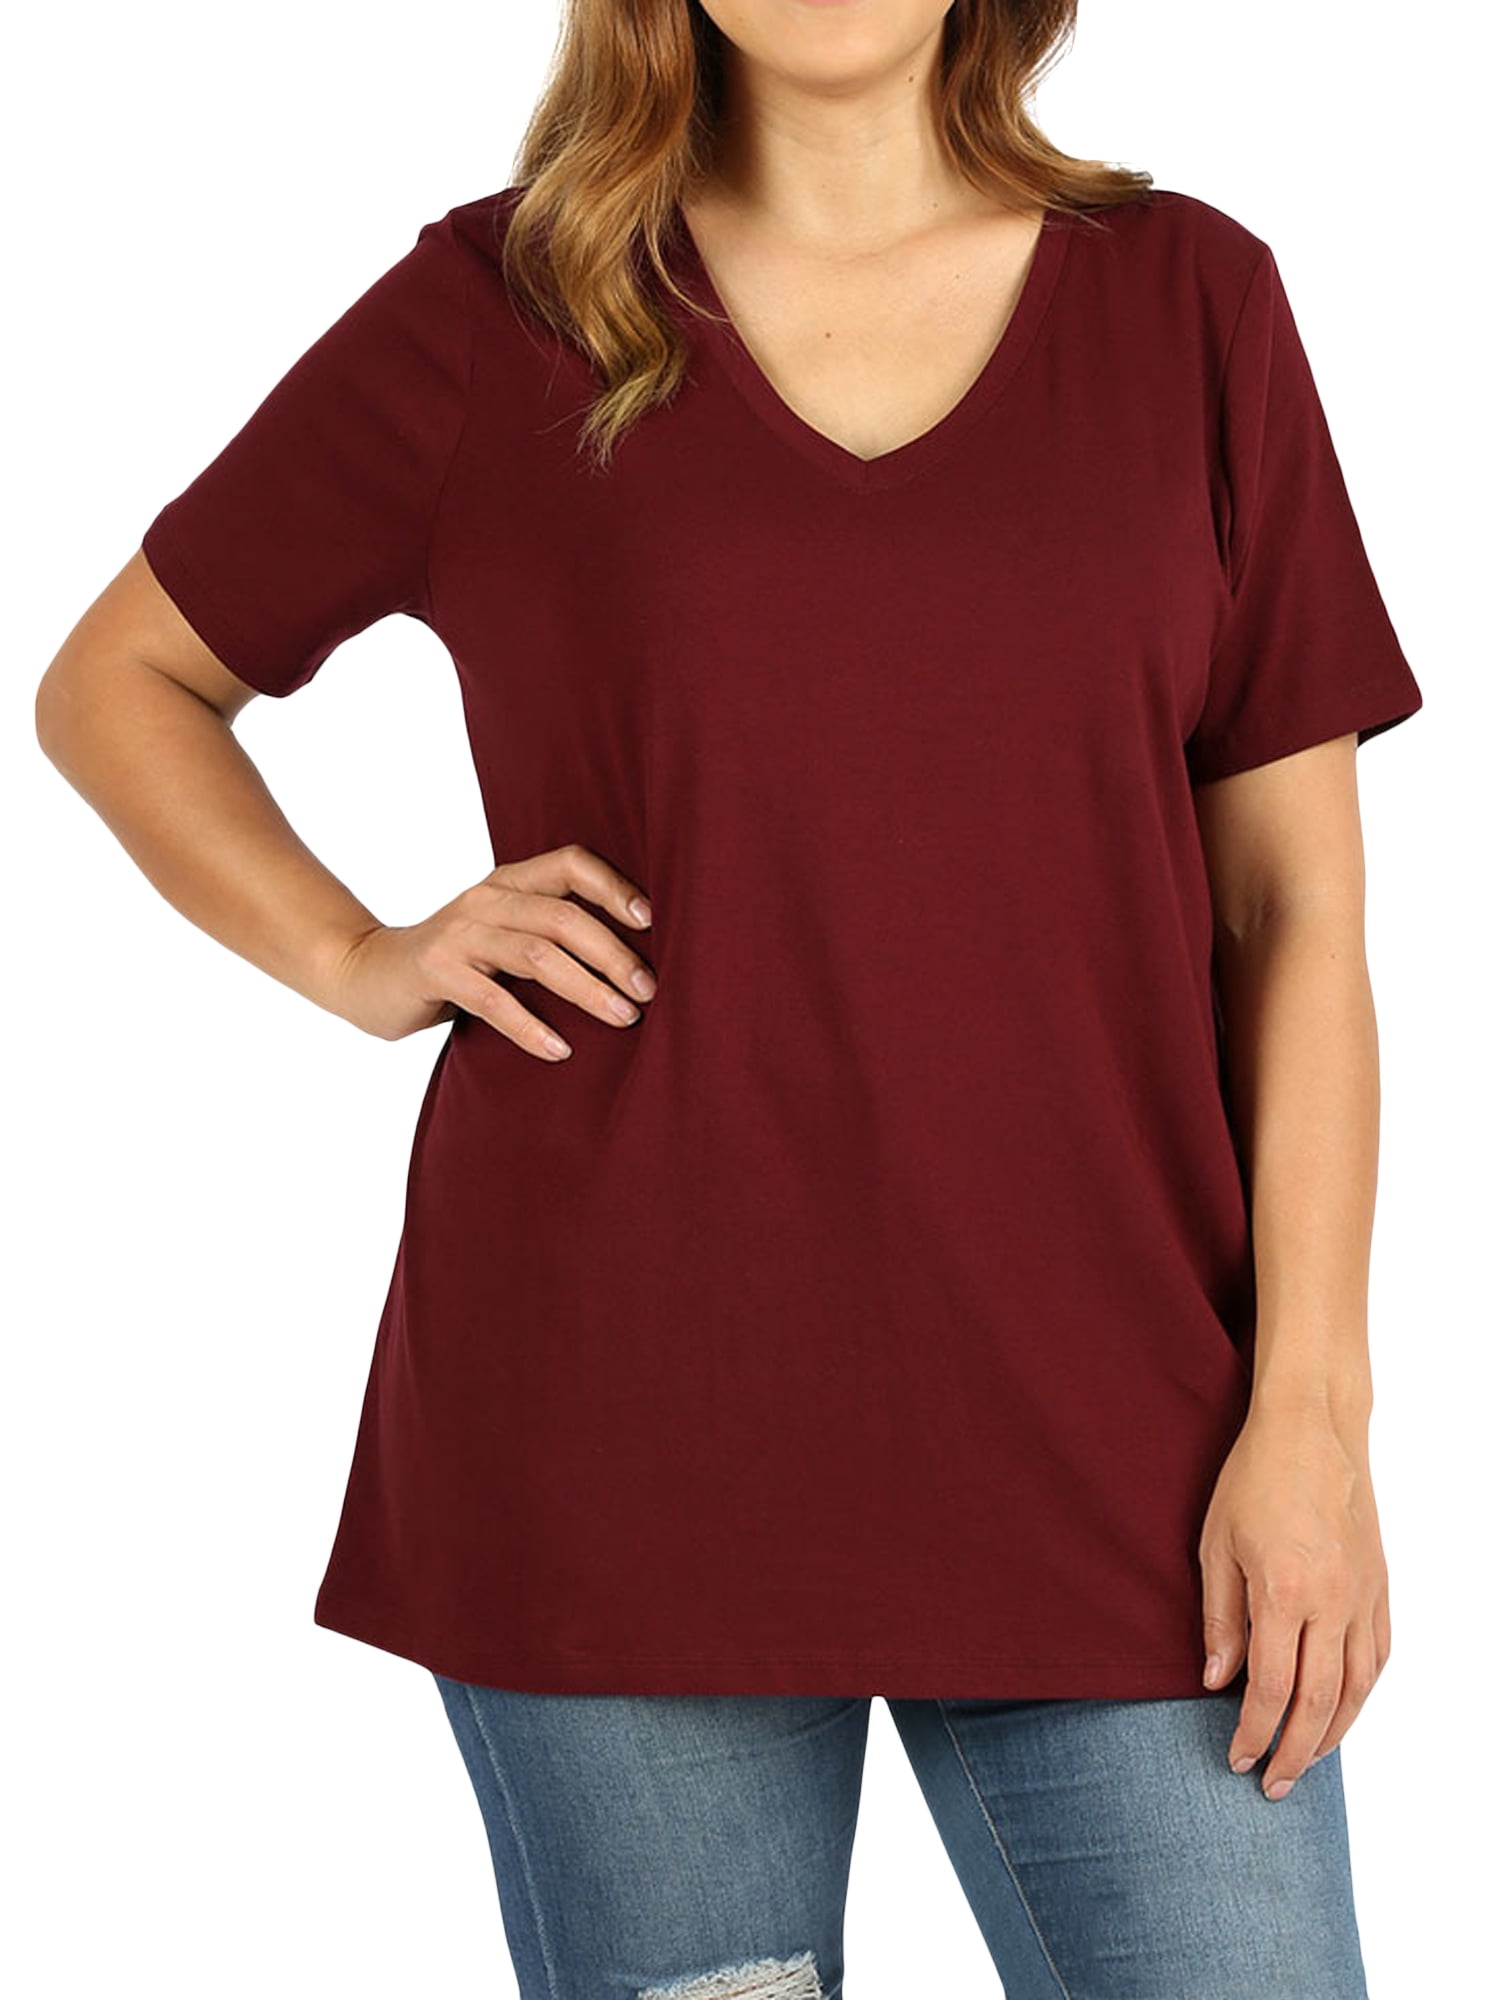 women-plus-size-cotton-v-neck-short-sleeve-casual-basic-tee-shirts